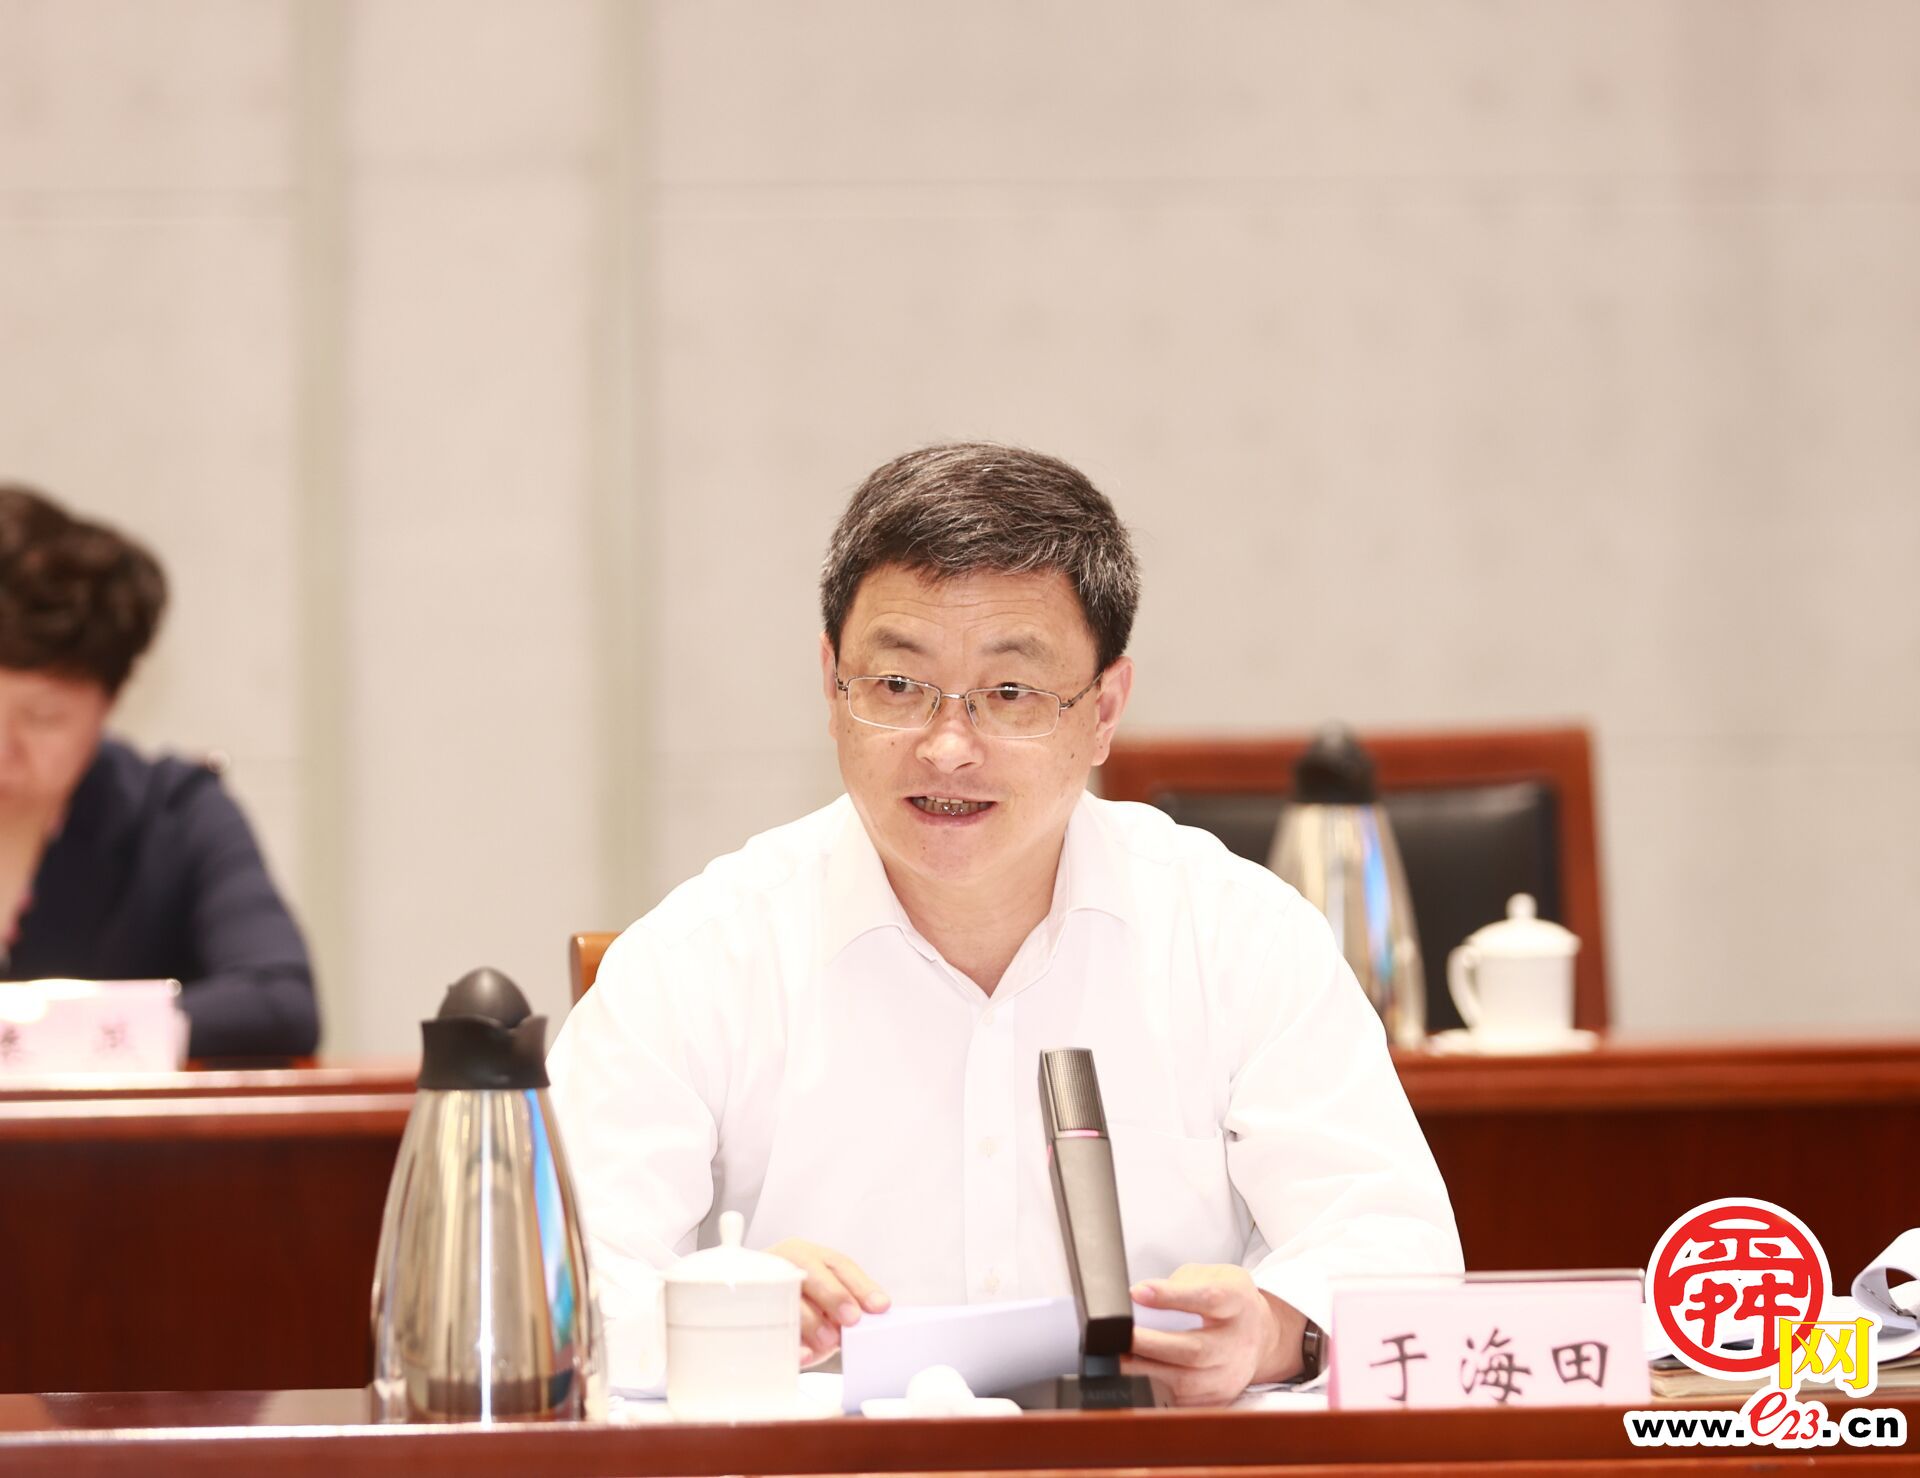 《济南金融科技基金投资协议》签署 刘强于海田与上海国际集团客人座谈并见证签约